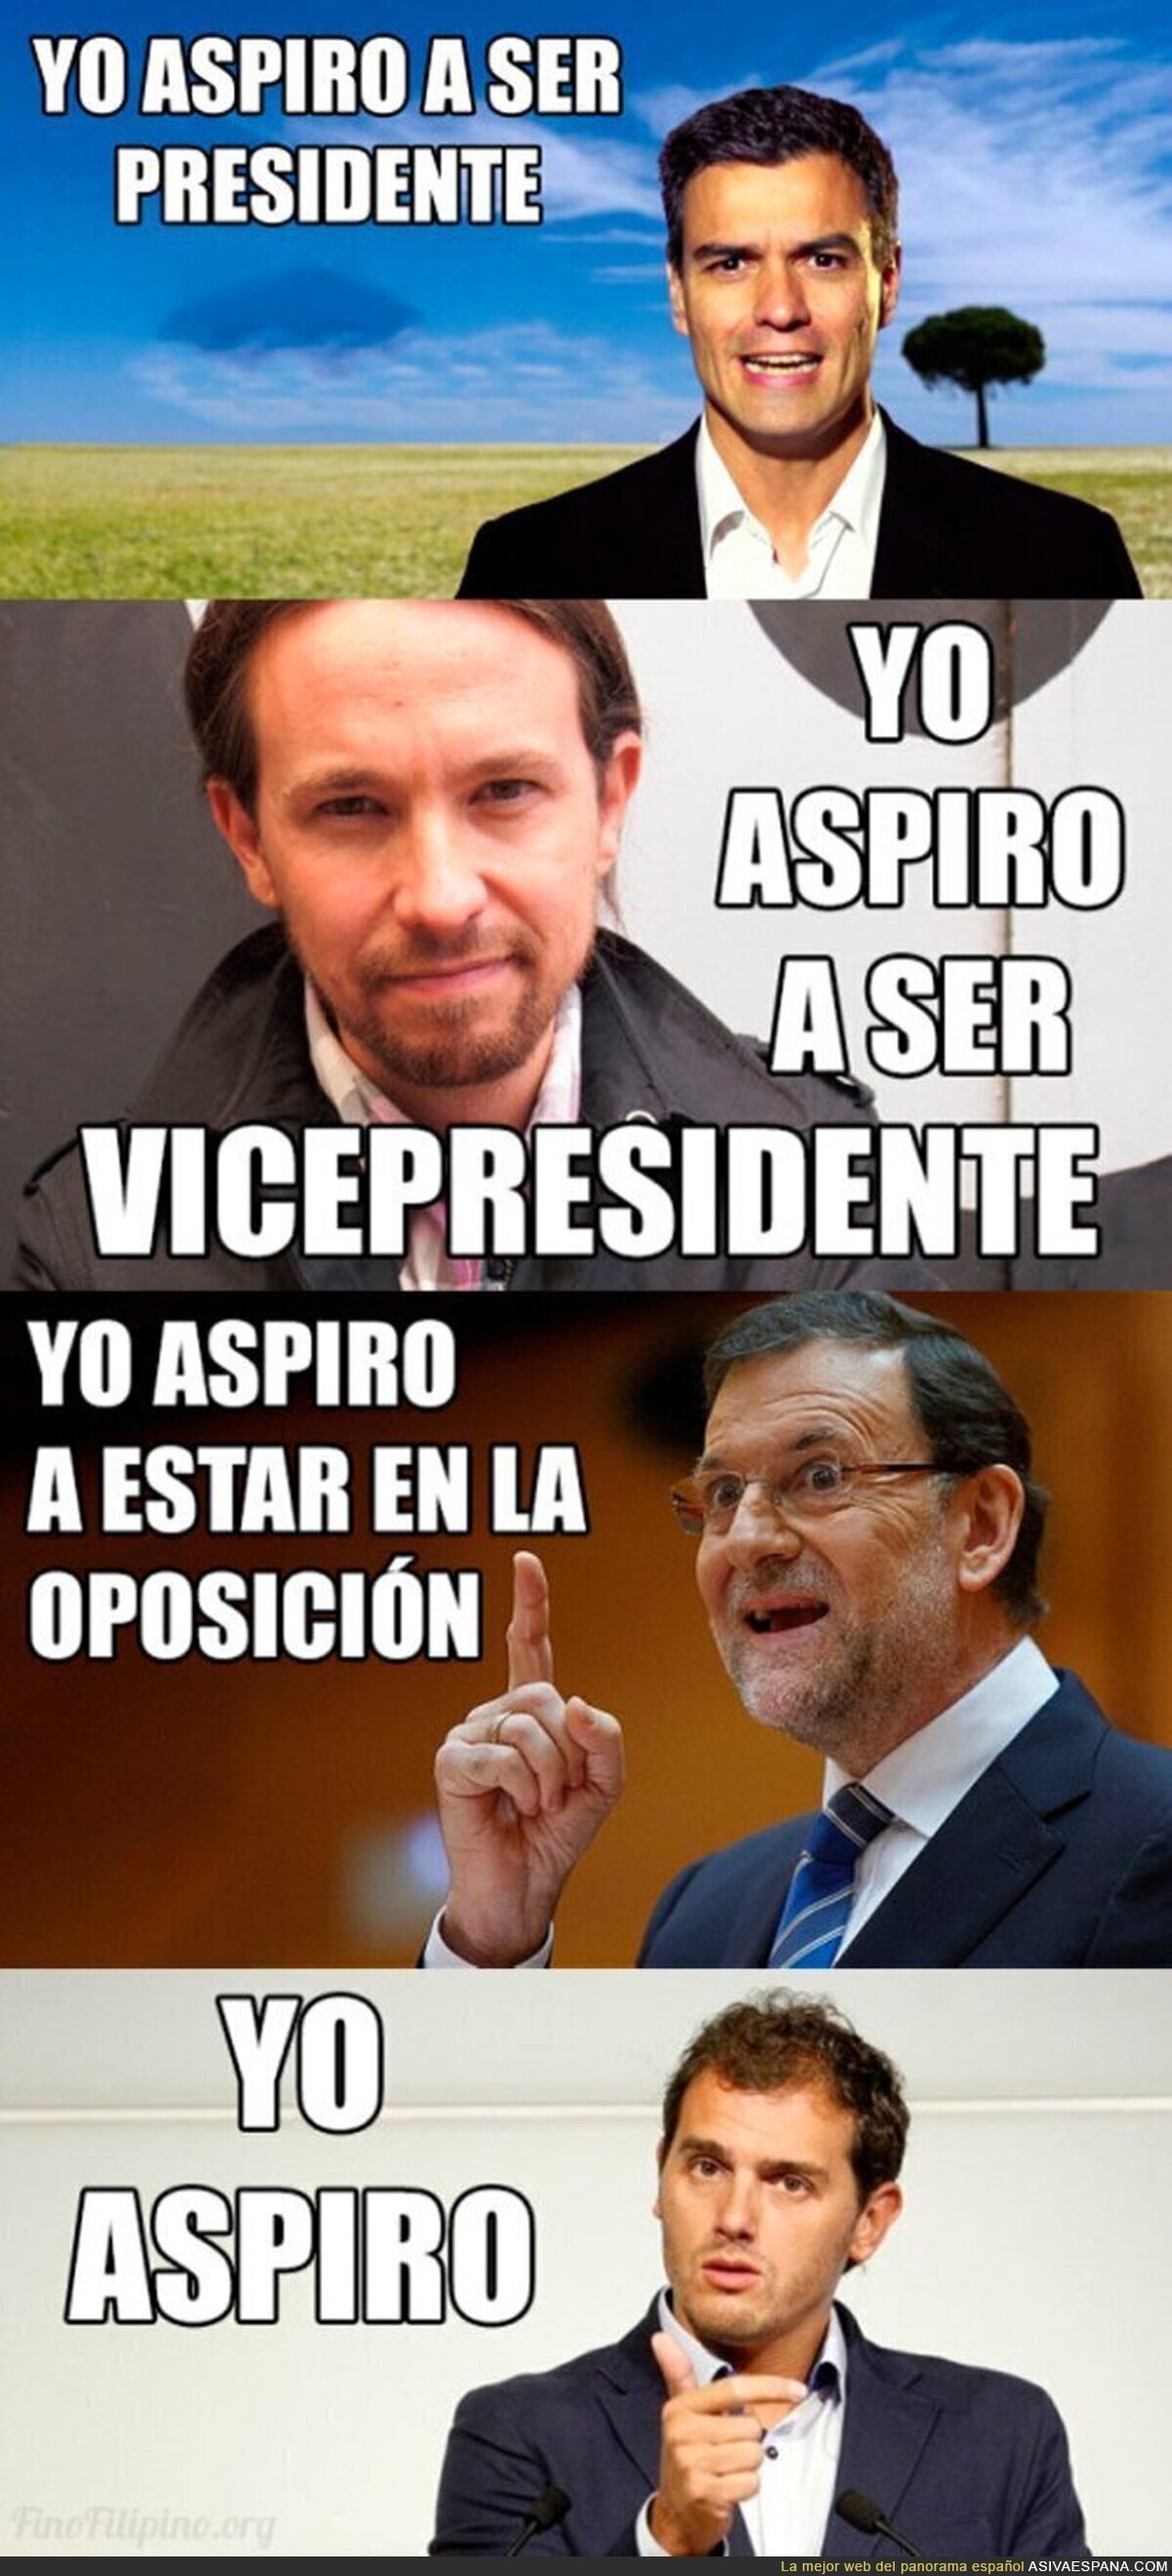 Las aspiraciones a los candidatos a la presidencia de España